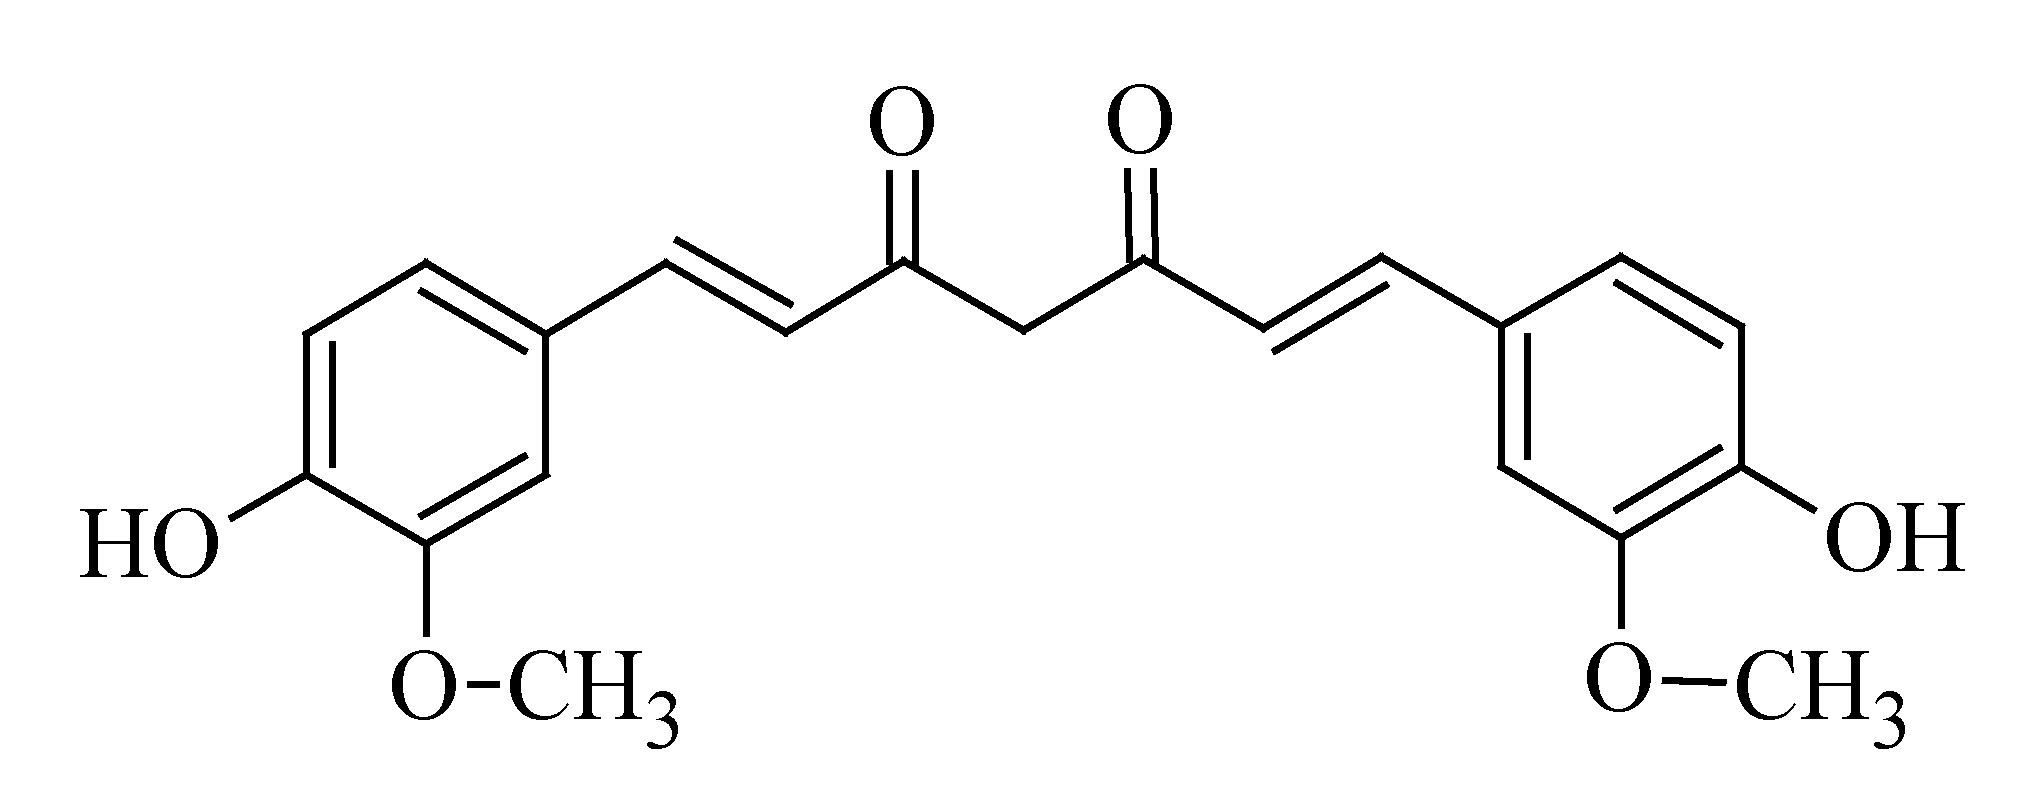 molecules-19-11679-g006.png